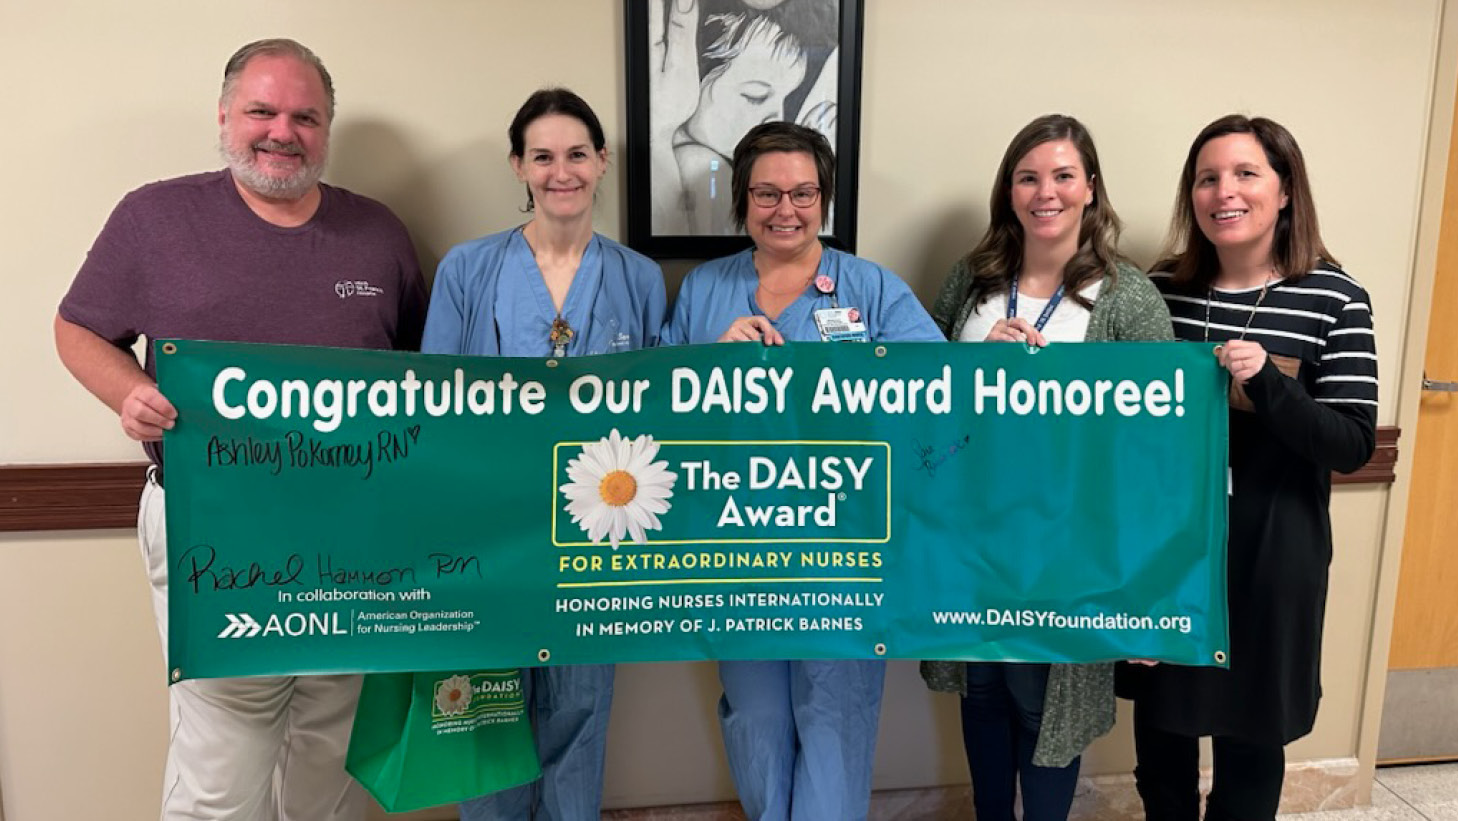 HSHS St. Francis Hospital honors nurse with DAISY Award